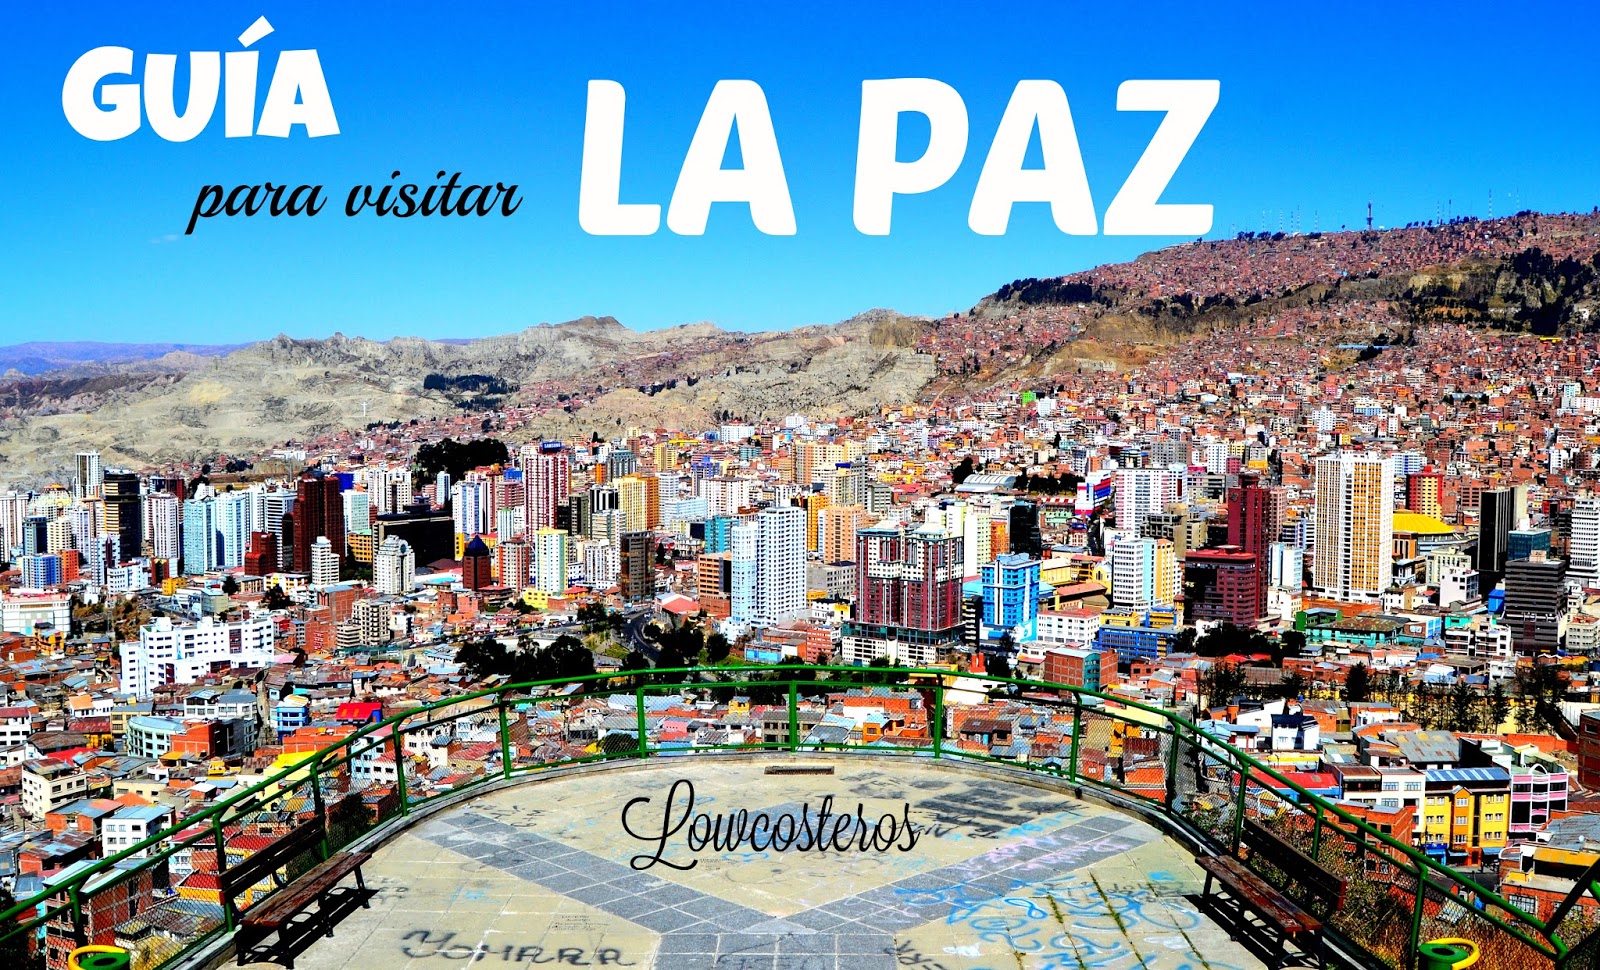 Lowcosteros: Guía para visitar La Paz, Bolivia